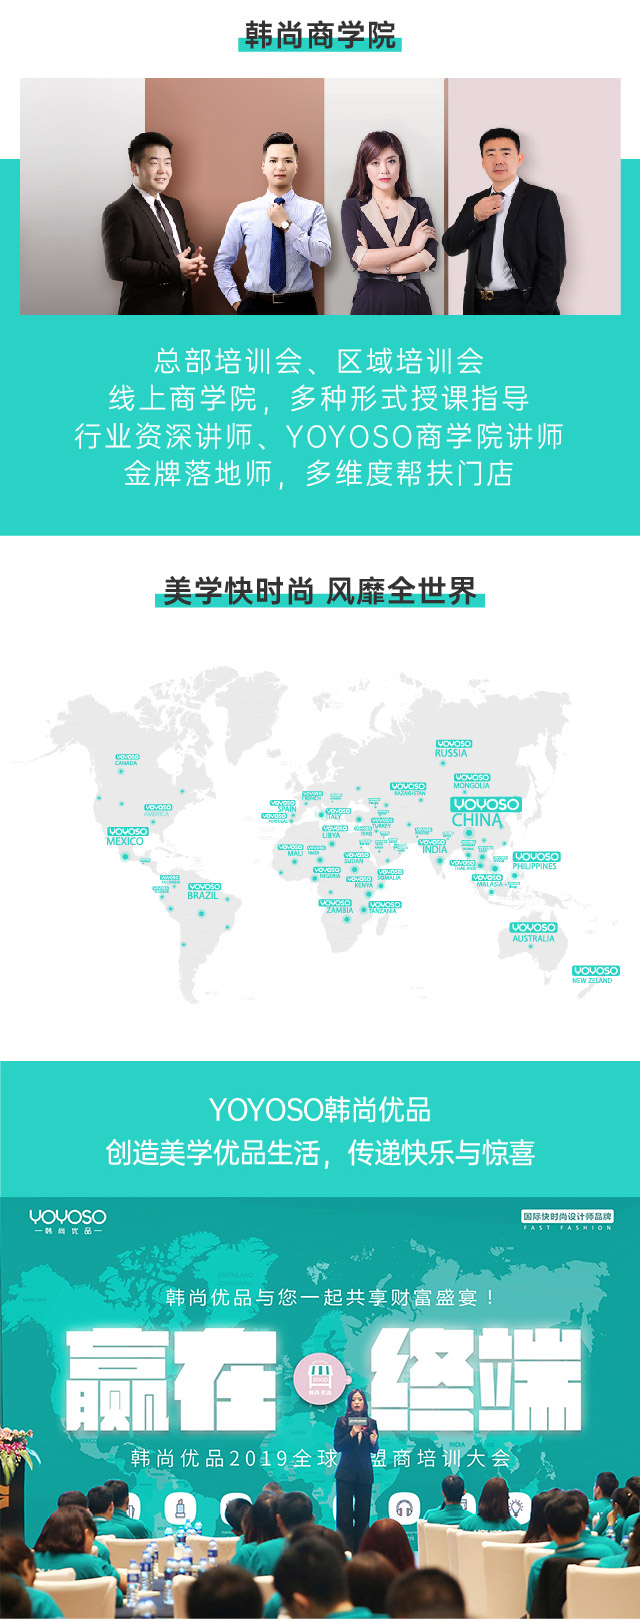 YOYOSO韓尚優品美學生活設計師品牌 融合美學與優品 美學快時尚 風靡全世界